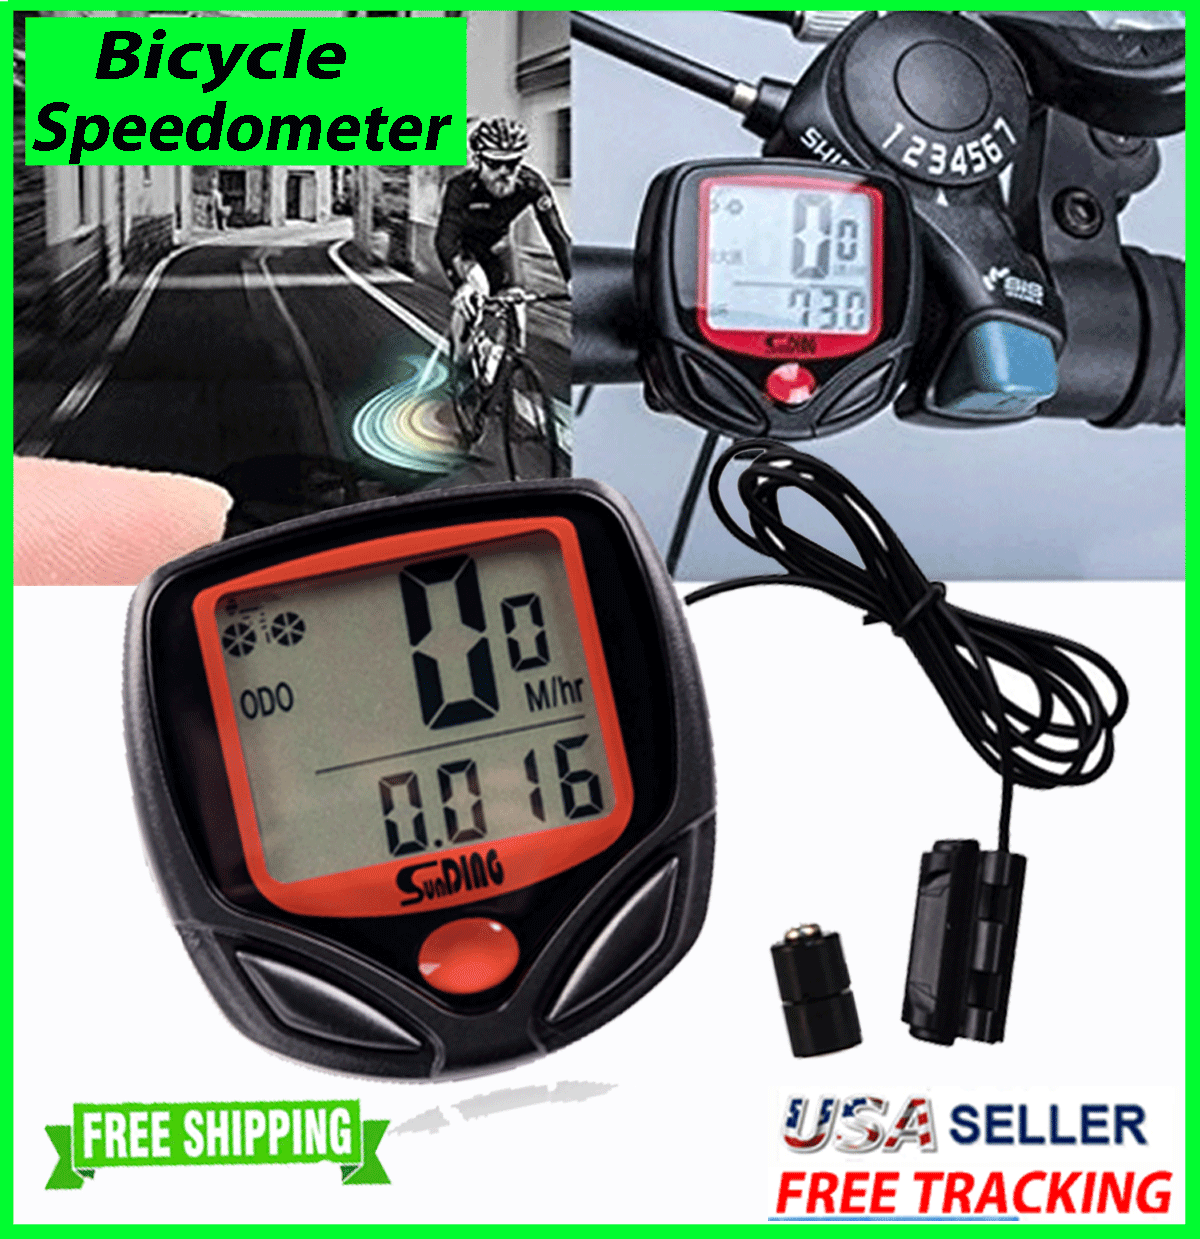 Bike Bicycle Speedometer Cycle Digital Odometer Computer Mph Kmh Waterproof Lcd